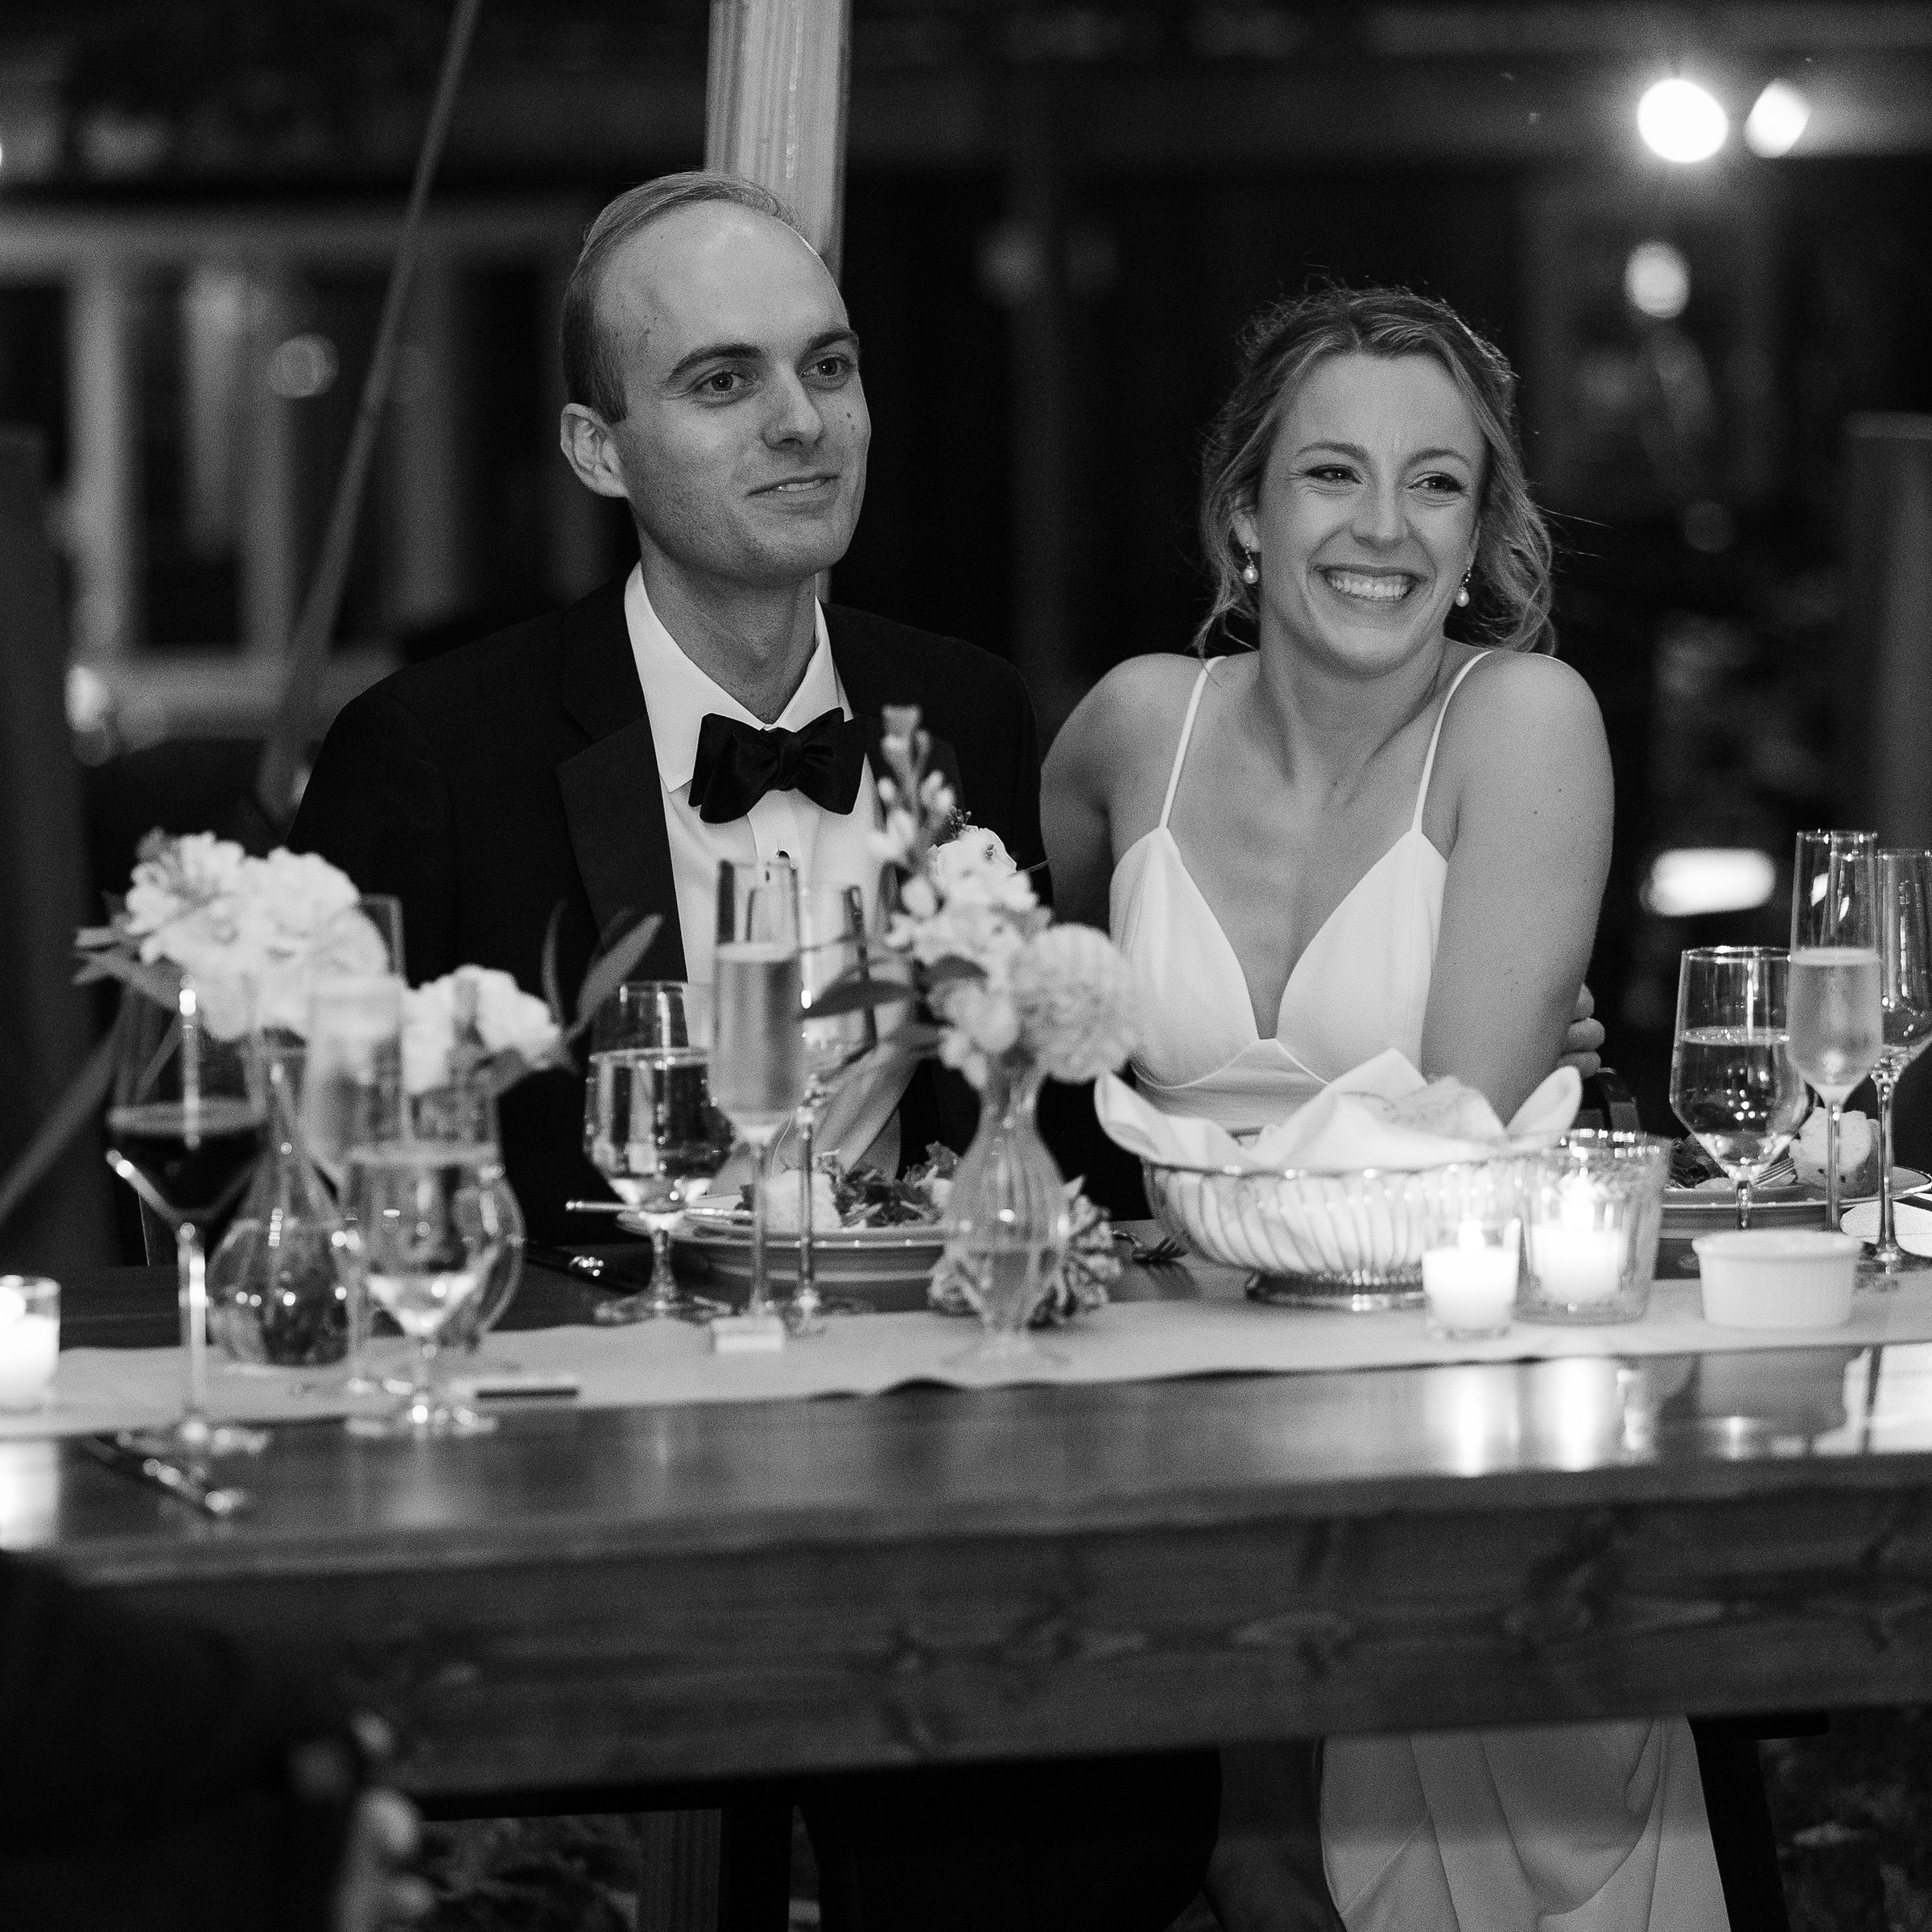 vermont fall wedding reception at the barnard inn restaurant